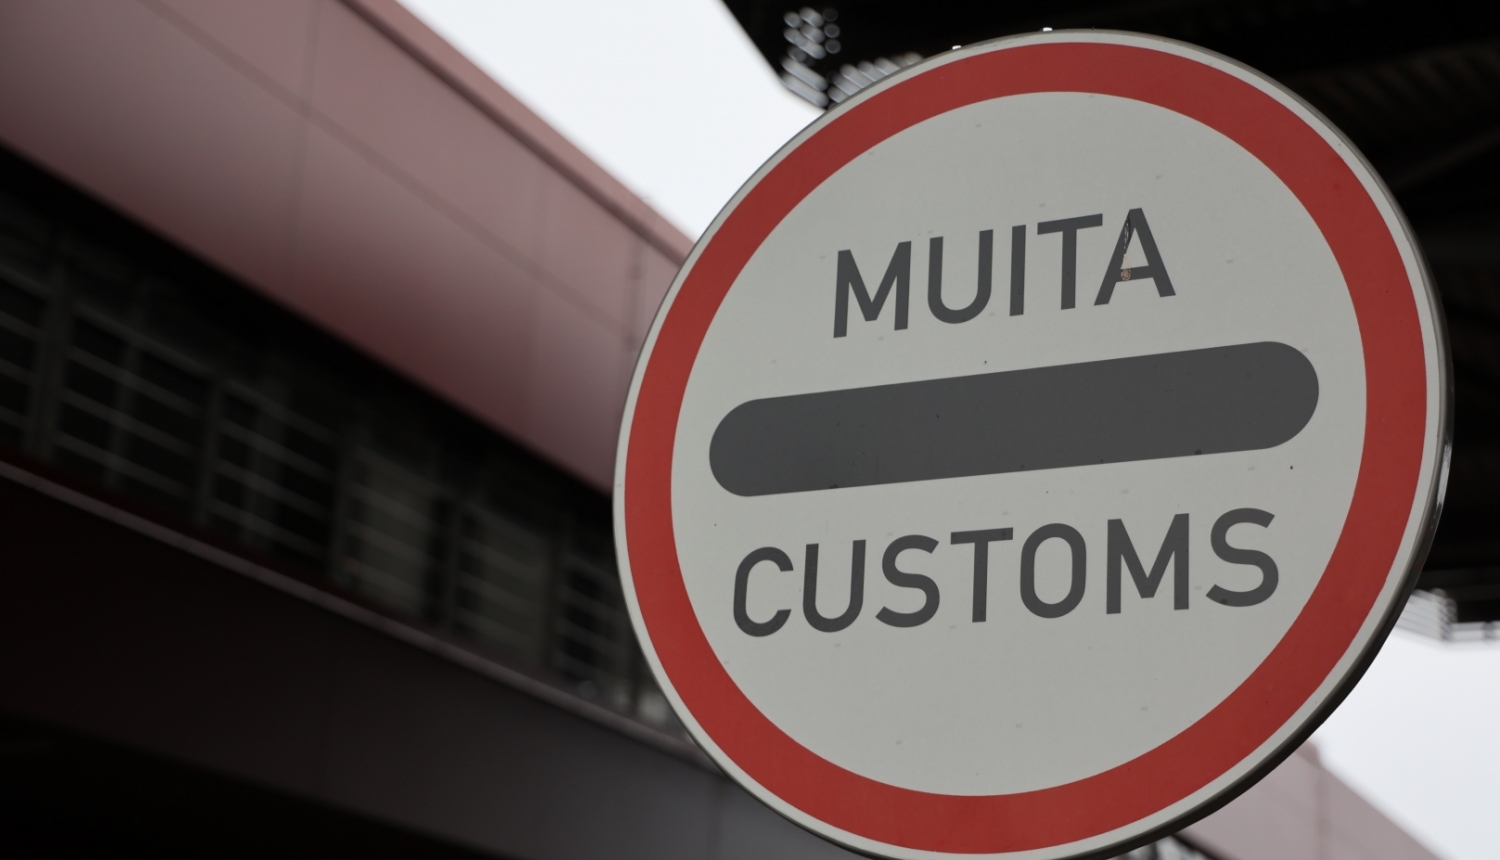 Brīdinājuma zīme ""Muita/Customs"